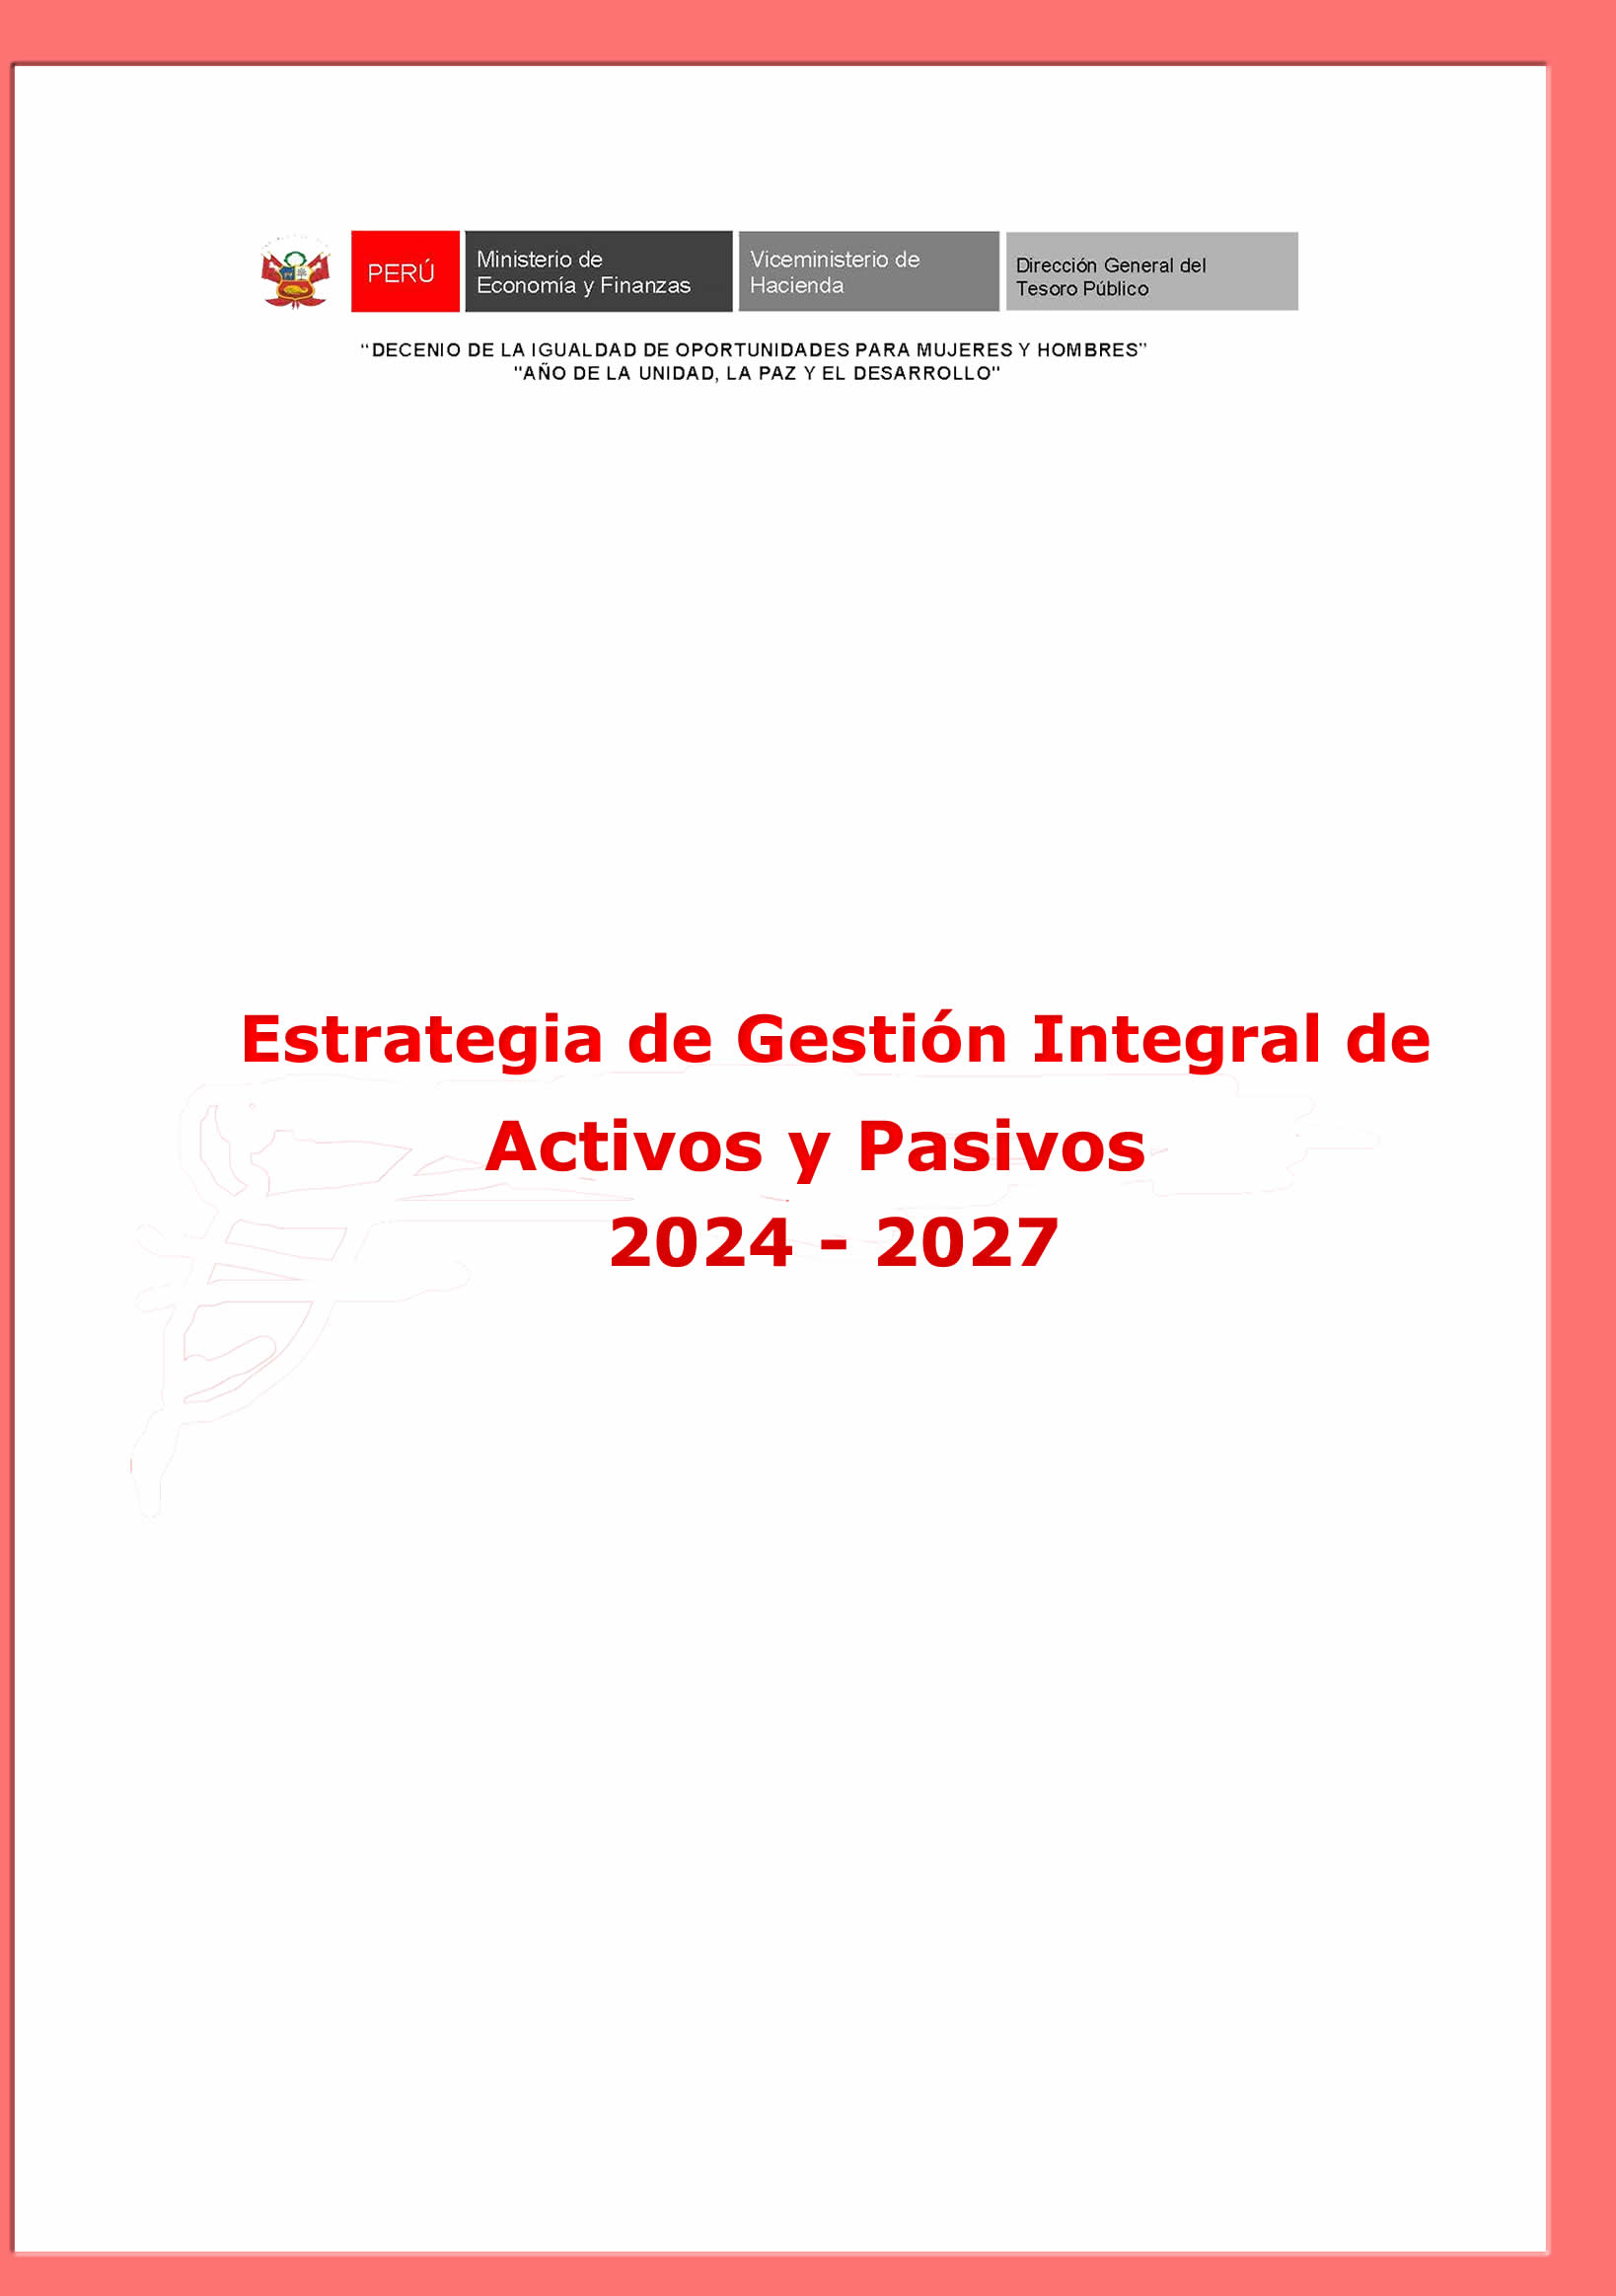 Estrategia de Gestión Integral de Activos y Pasivos 2024 - 2027